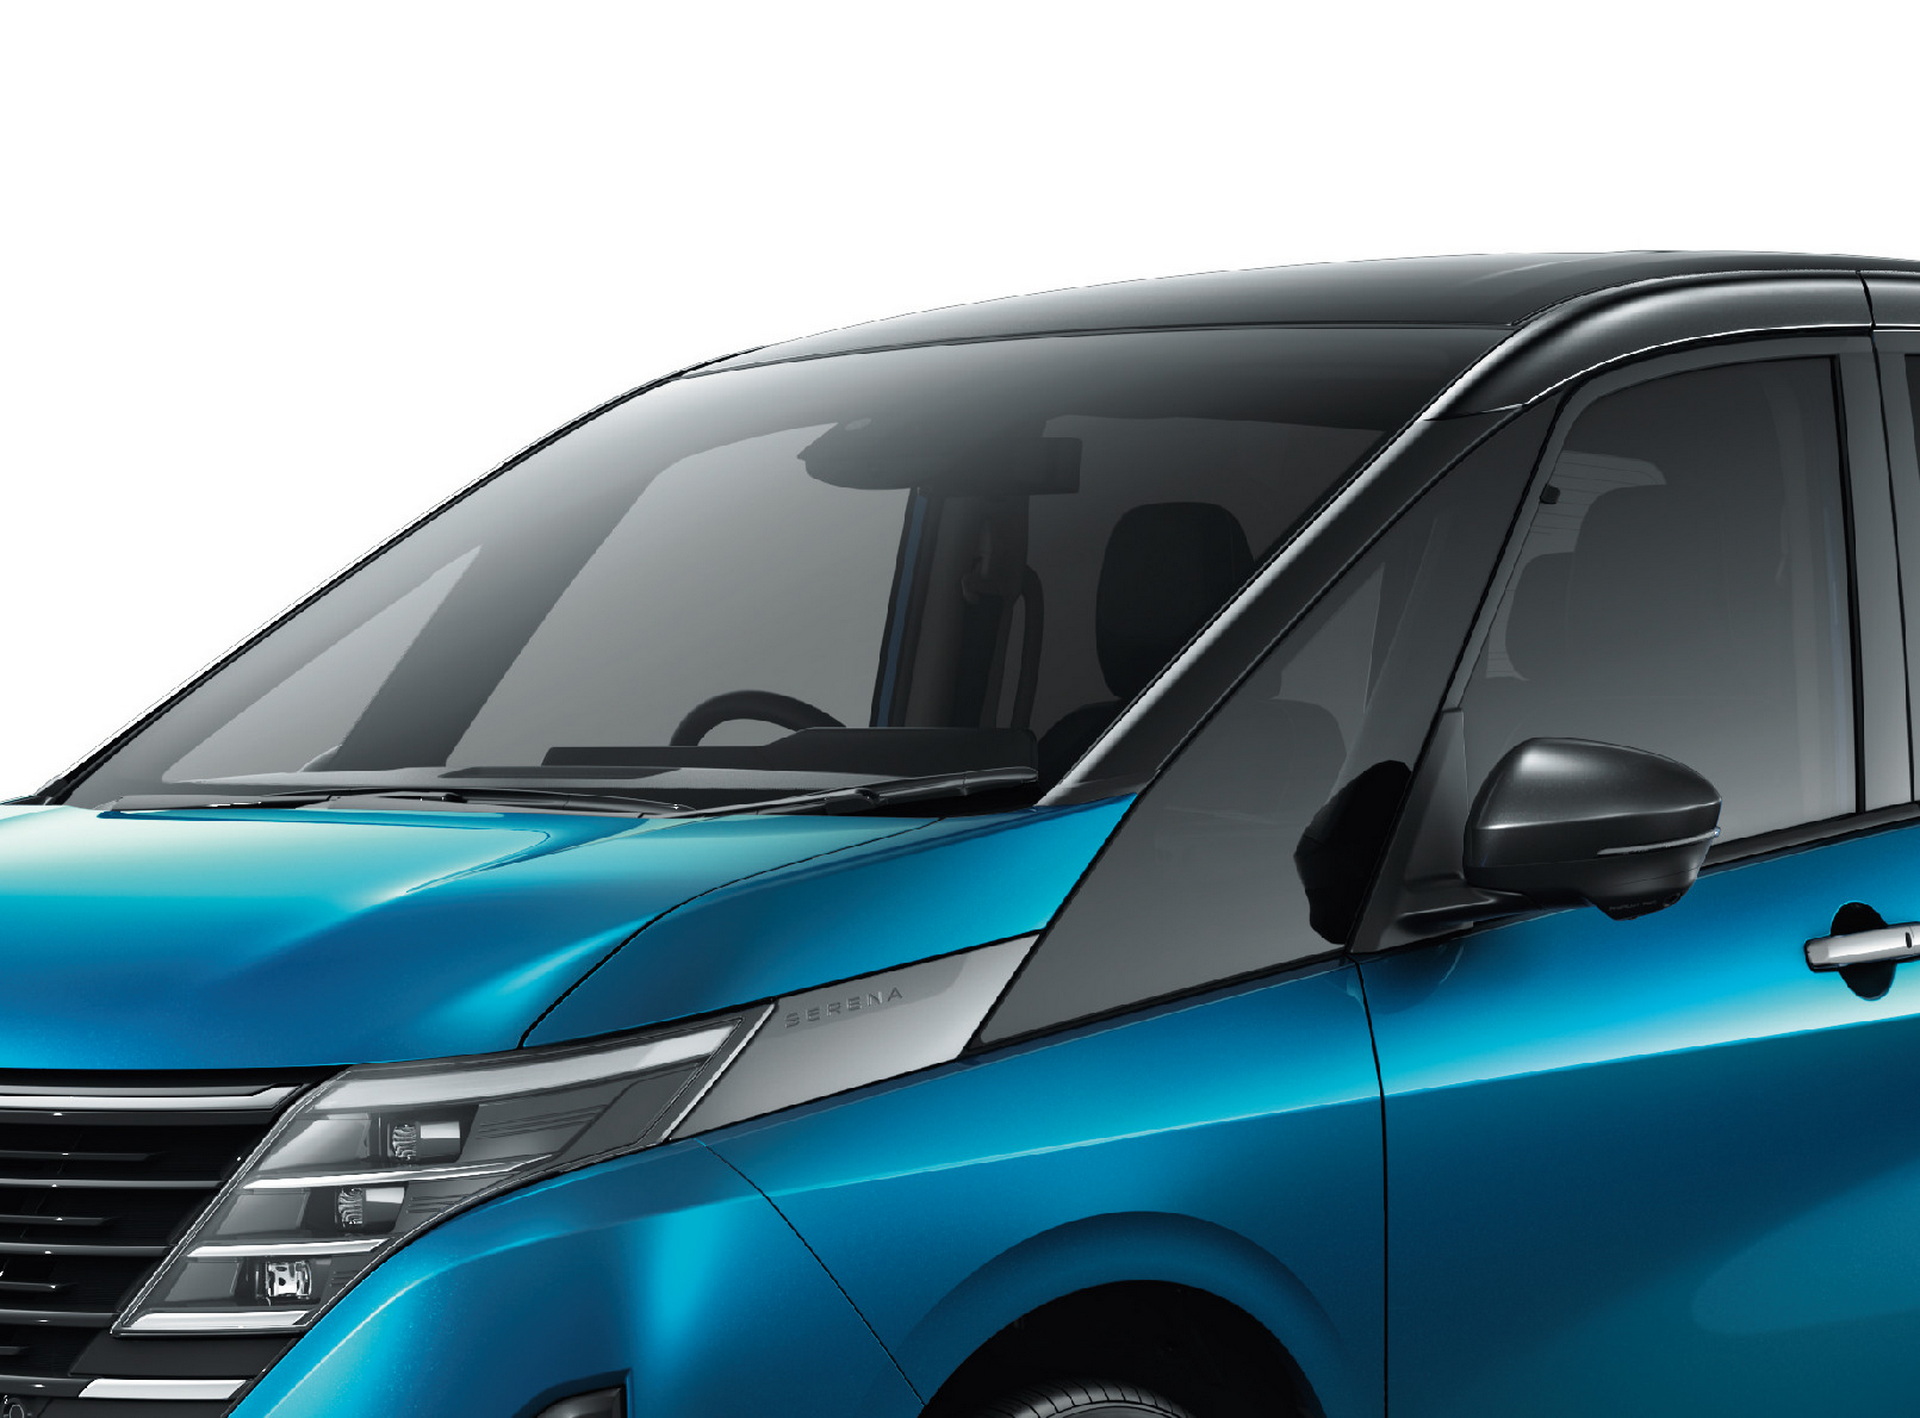 Yeni Nissan Serena minivan tanıtıldı: İşte tasarımı ve özellikleri